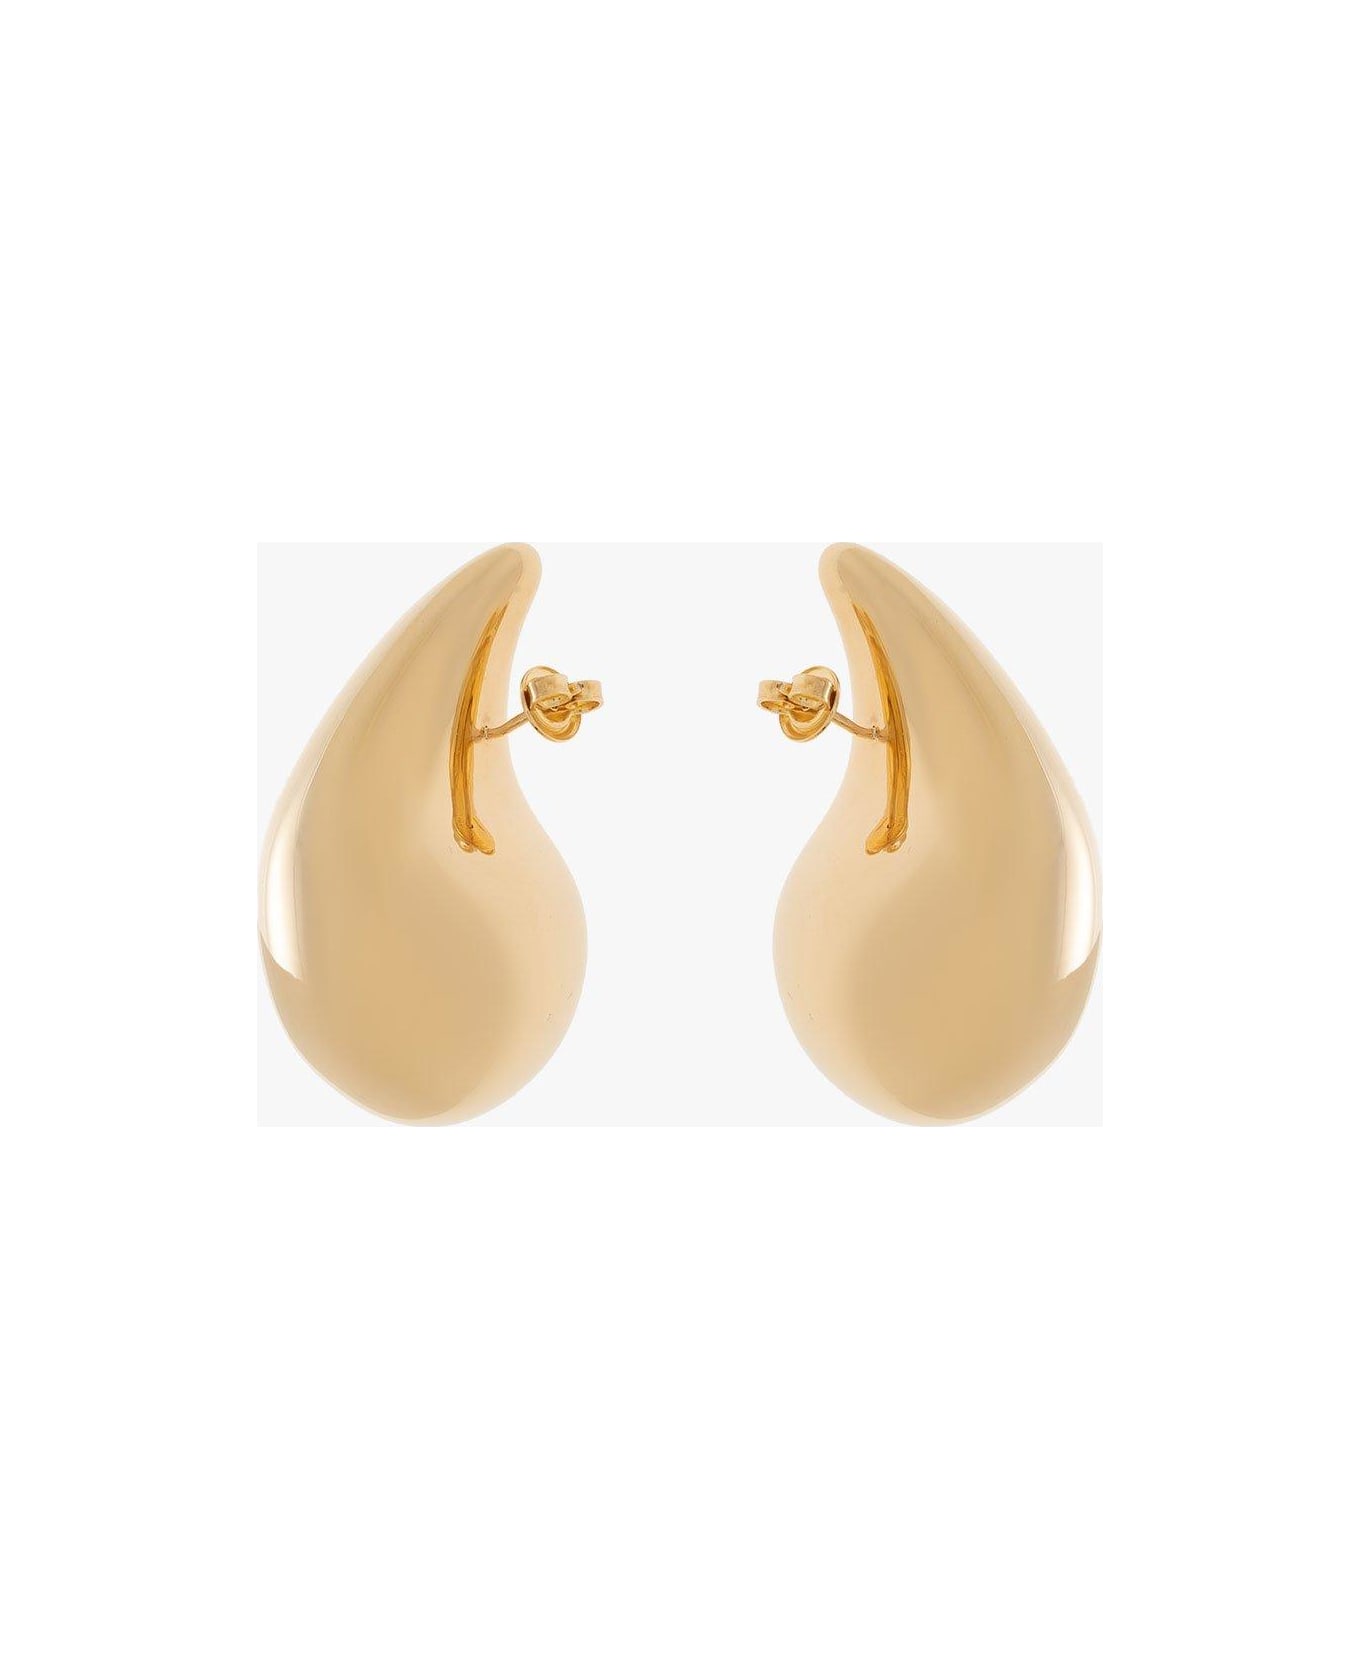 Bottega Veneta Drop Earrings - Yellow gold